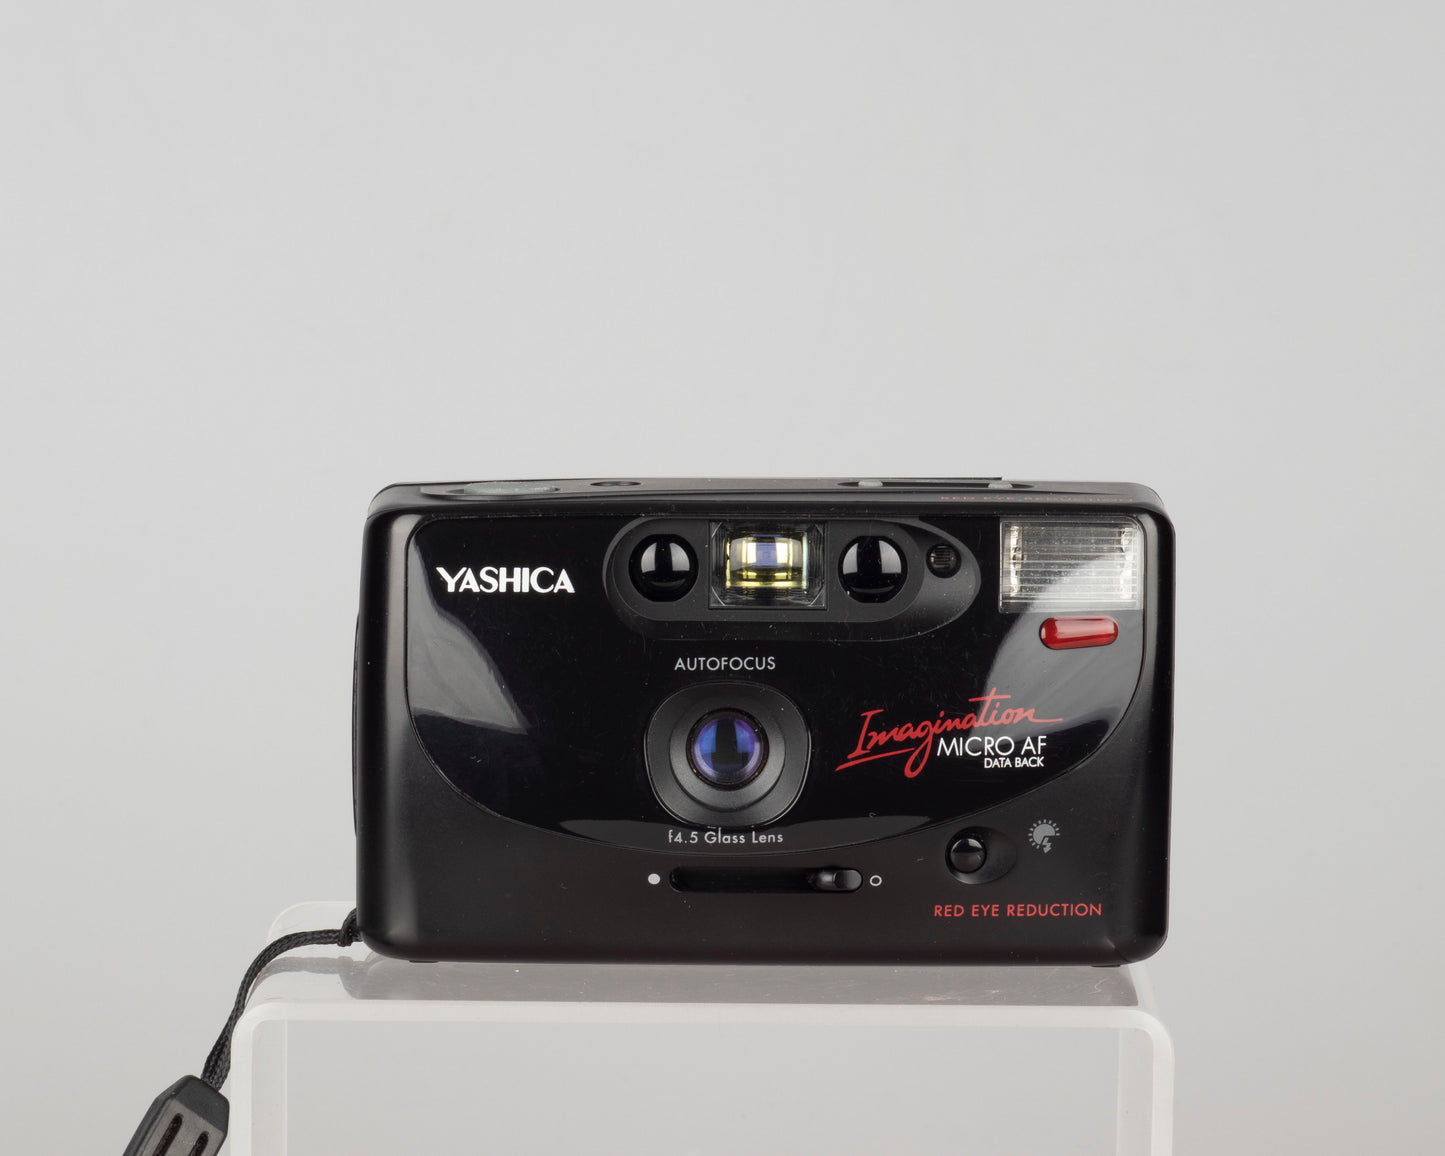 Yashica Imagination Micro AF Data Back 35mm film camera w/case